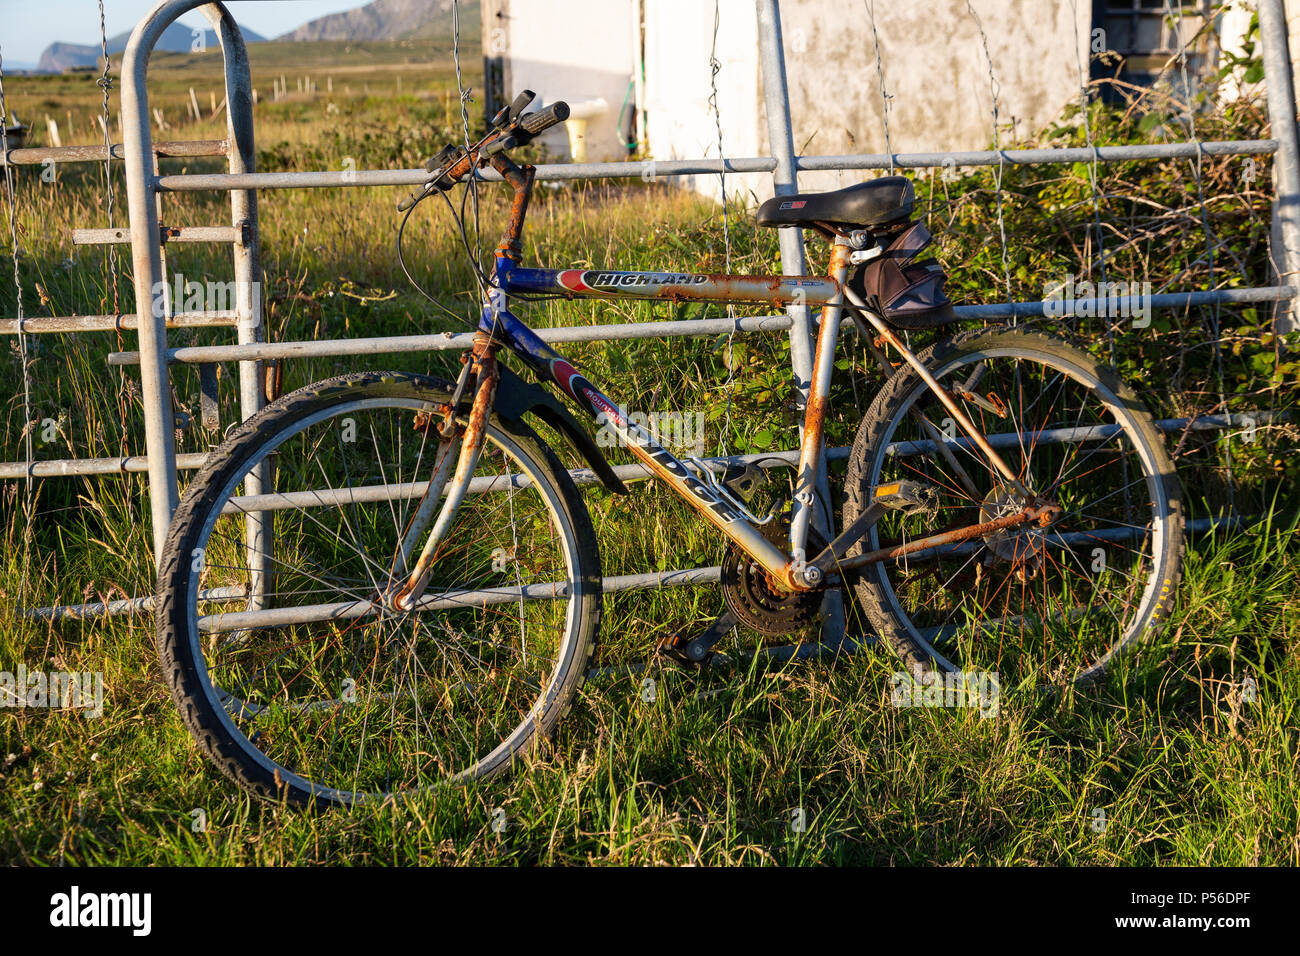 Rostigen alten Fahrrad stützte sich gegen einen Zaun, Valentia Island County Kerry, Irland Stockfoto